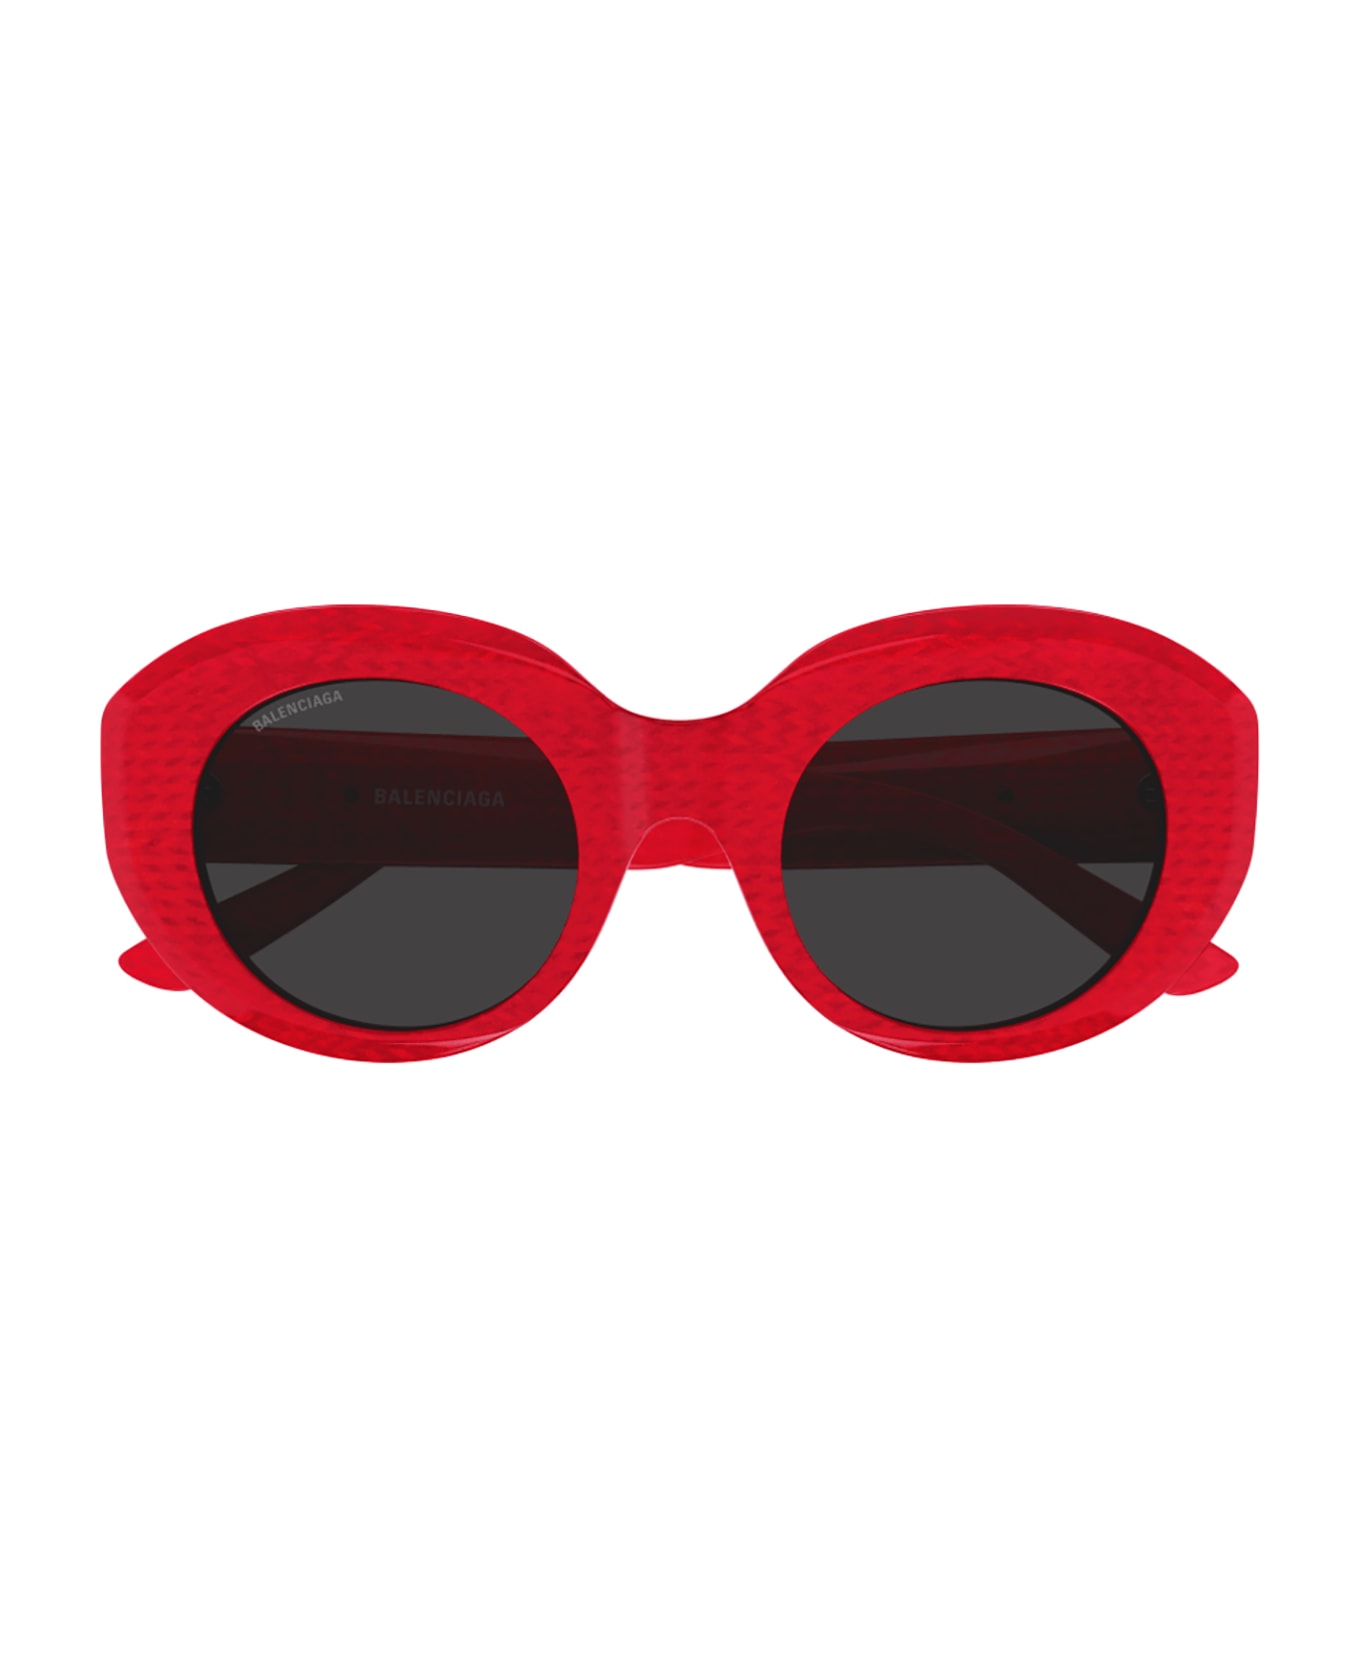 Balenciaga Eyewear 1e684id0a - Red Red Grey